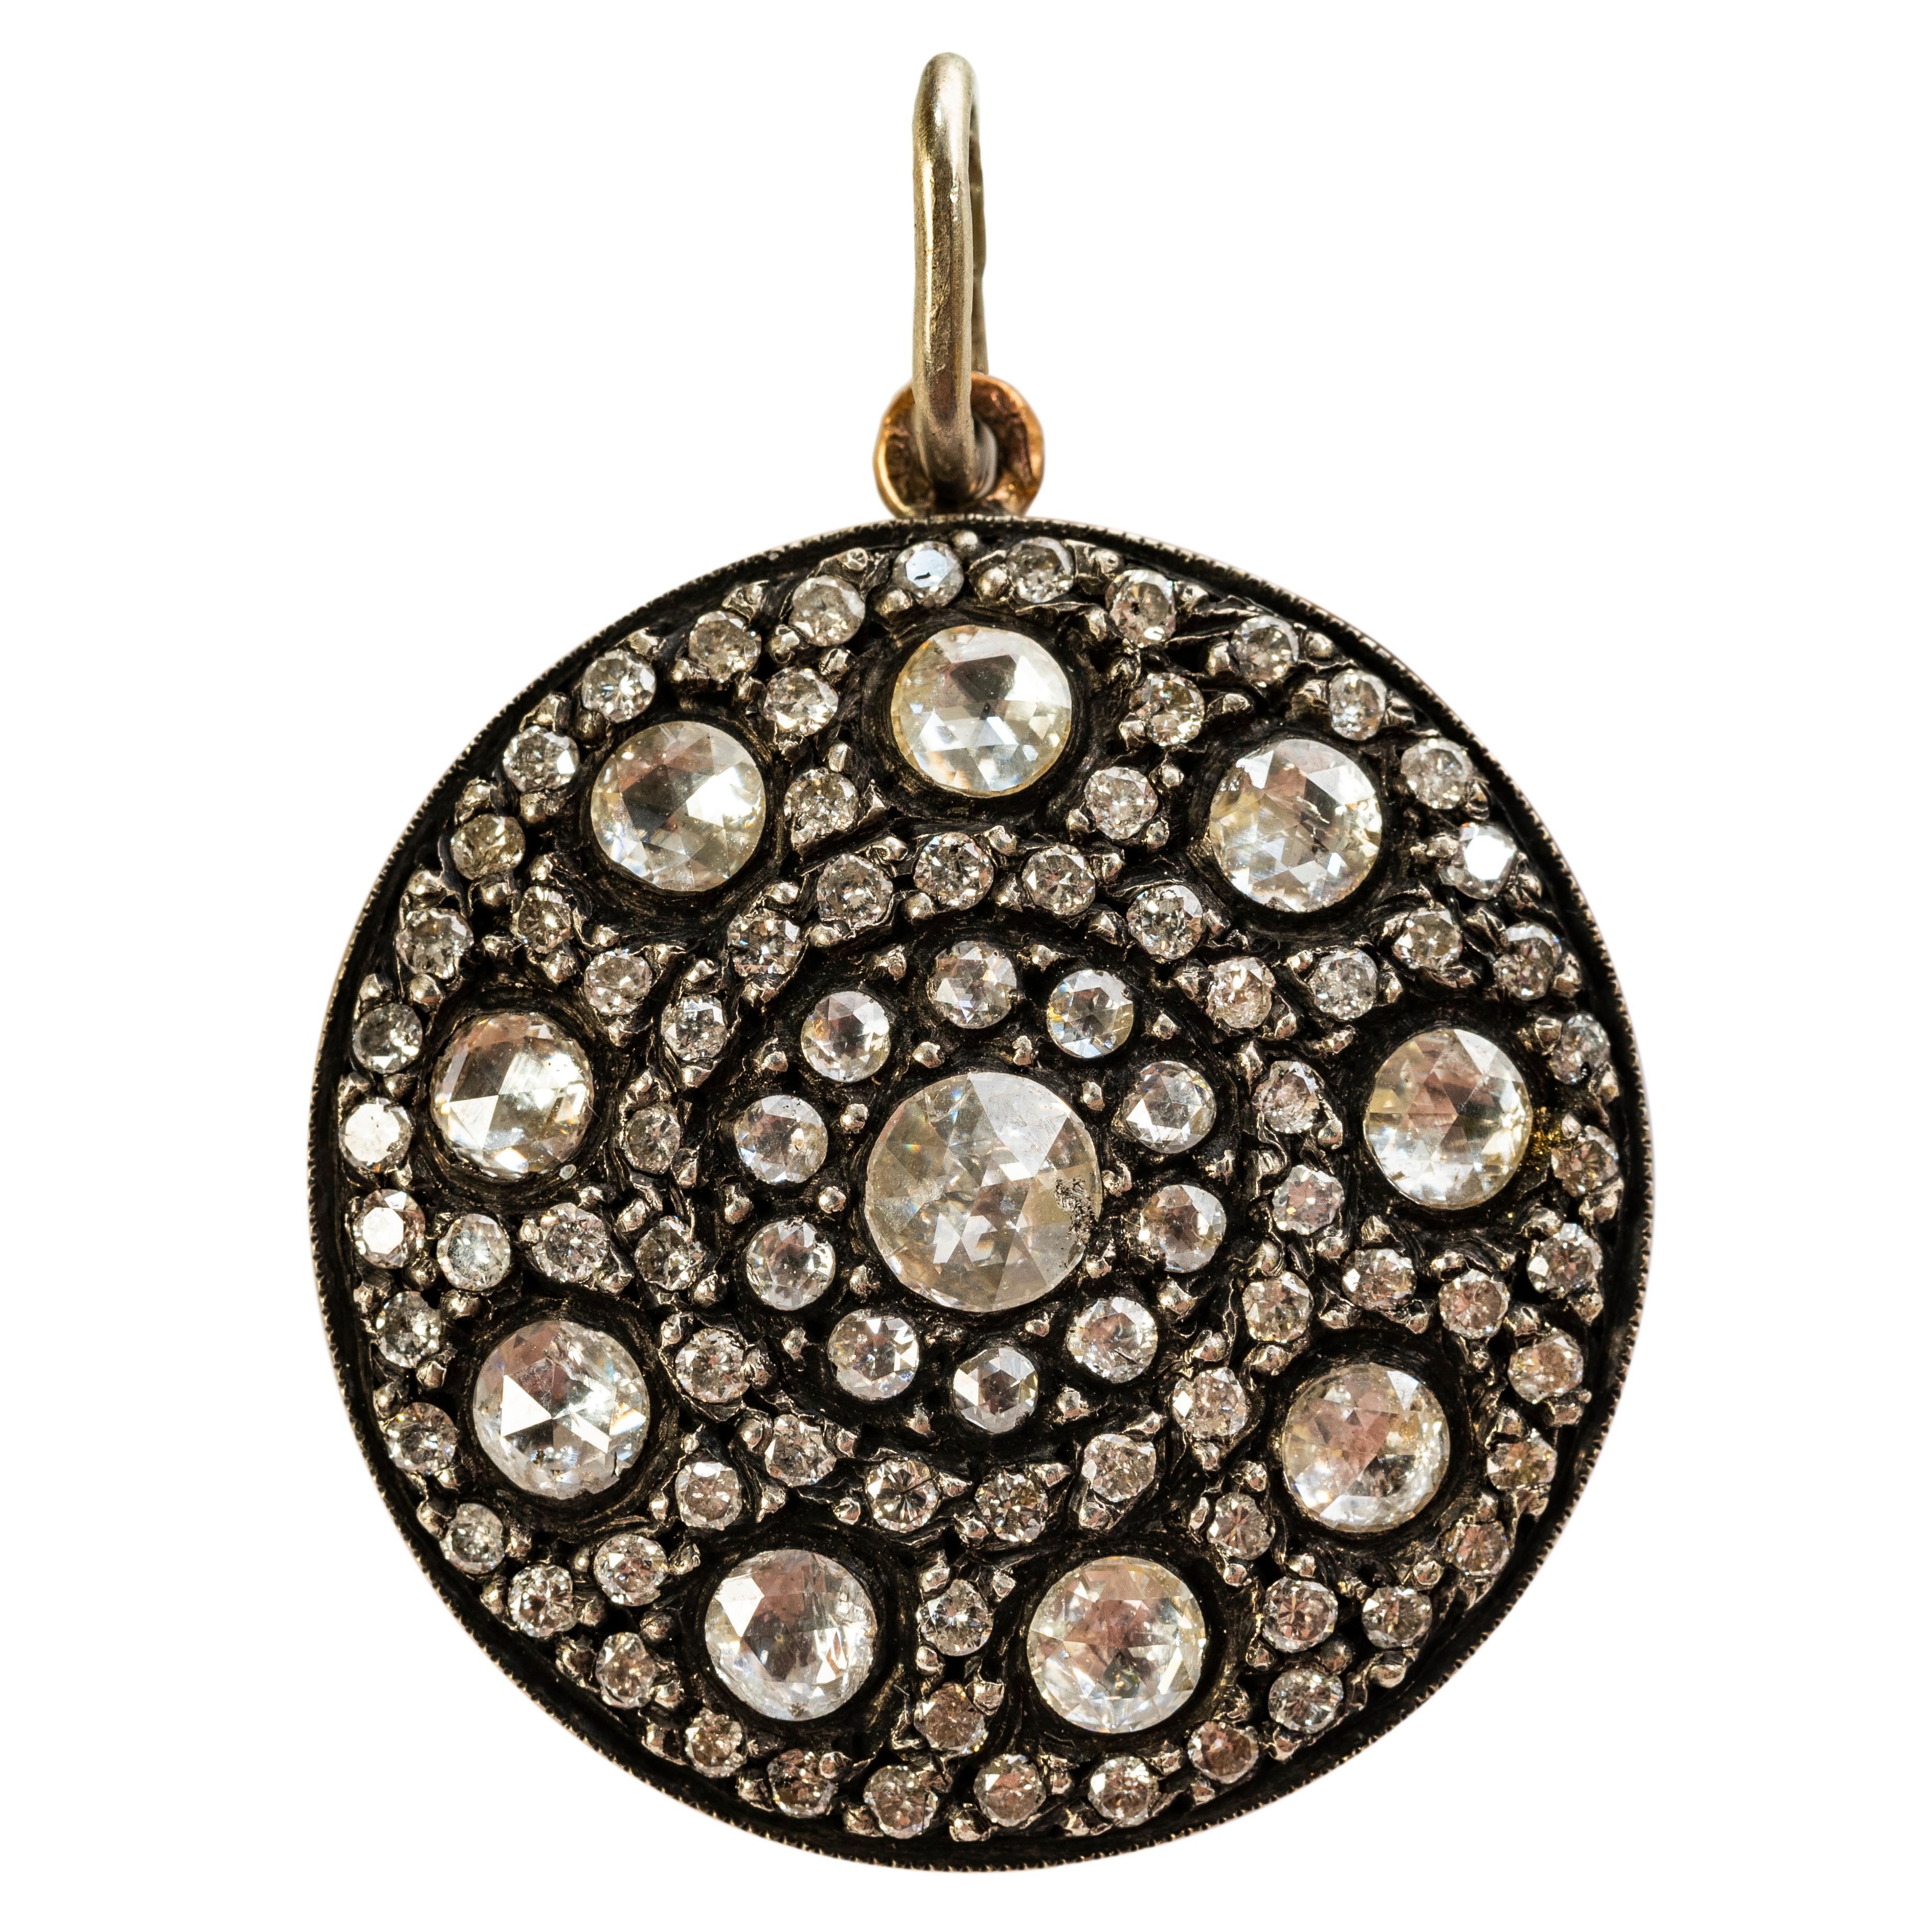 Un magnifique pendentif incrusté de diamants rappelant l'ancienne Moscovie, densément serti de bandes co-centrales de diamants roses, monté en argent et en or rose 9k, le revers représentant des motifs floraux stylisés en repoussé. 

Avec des